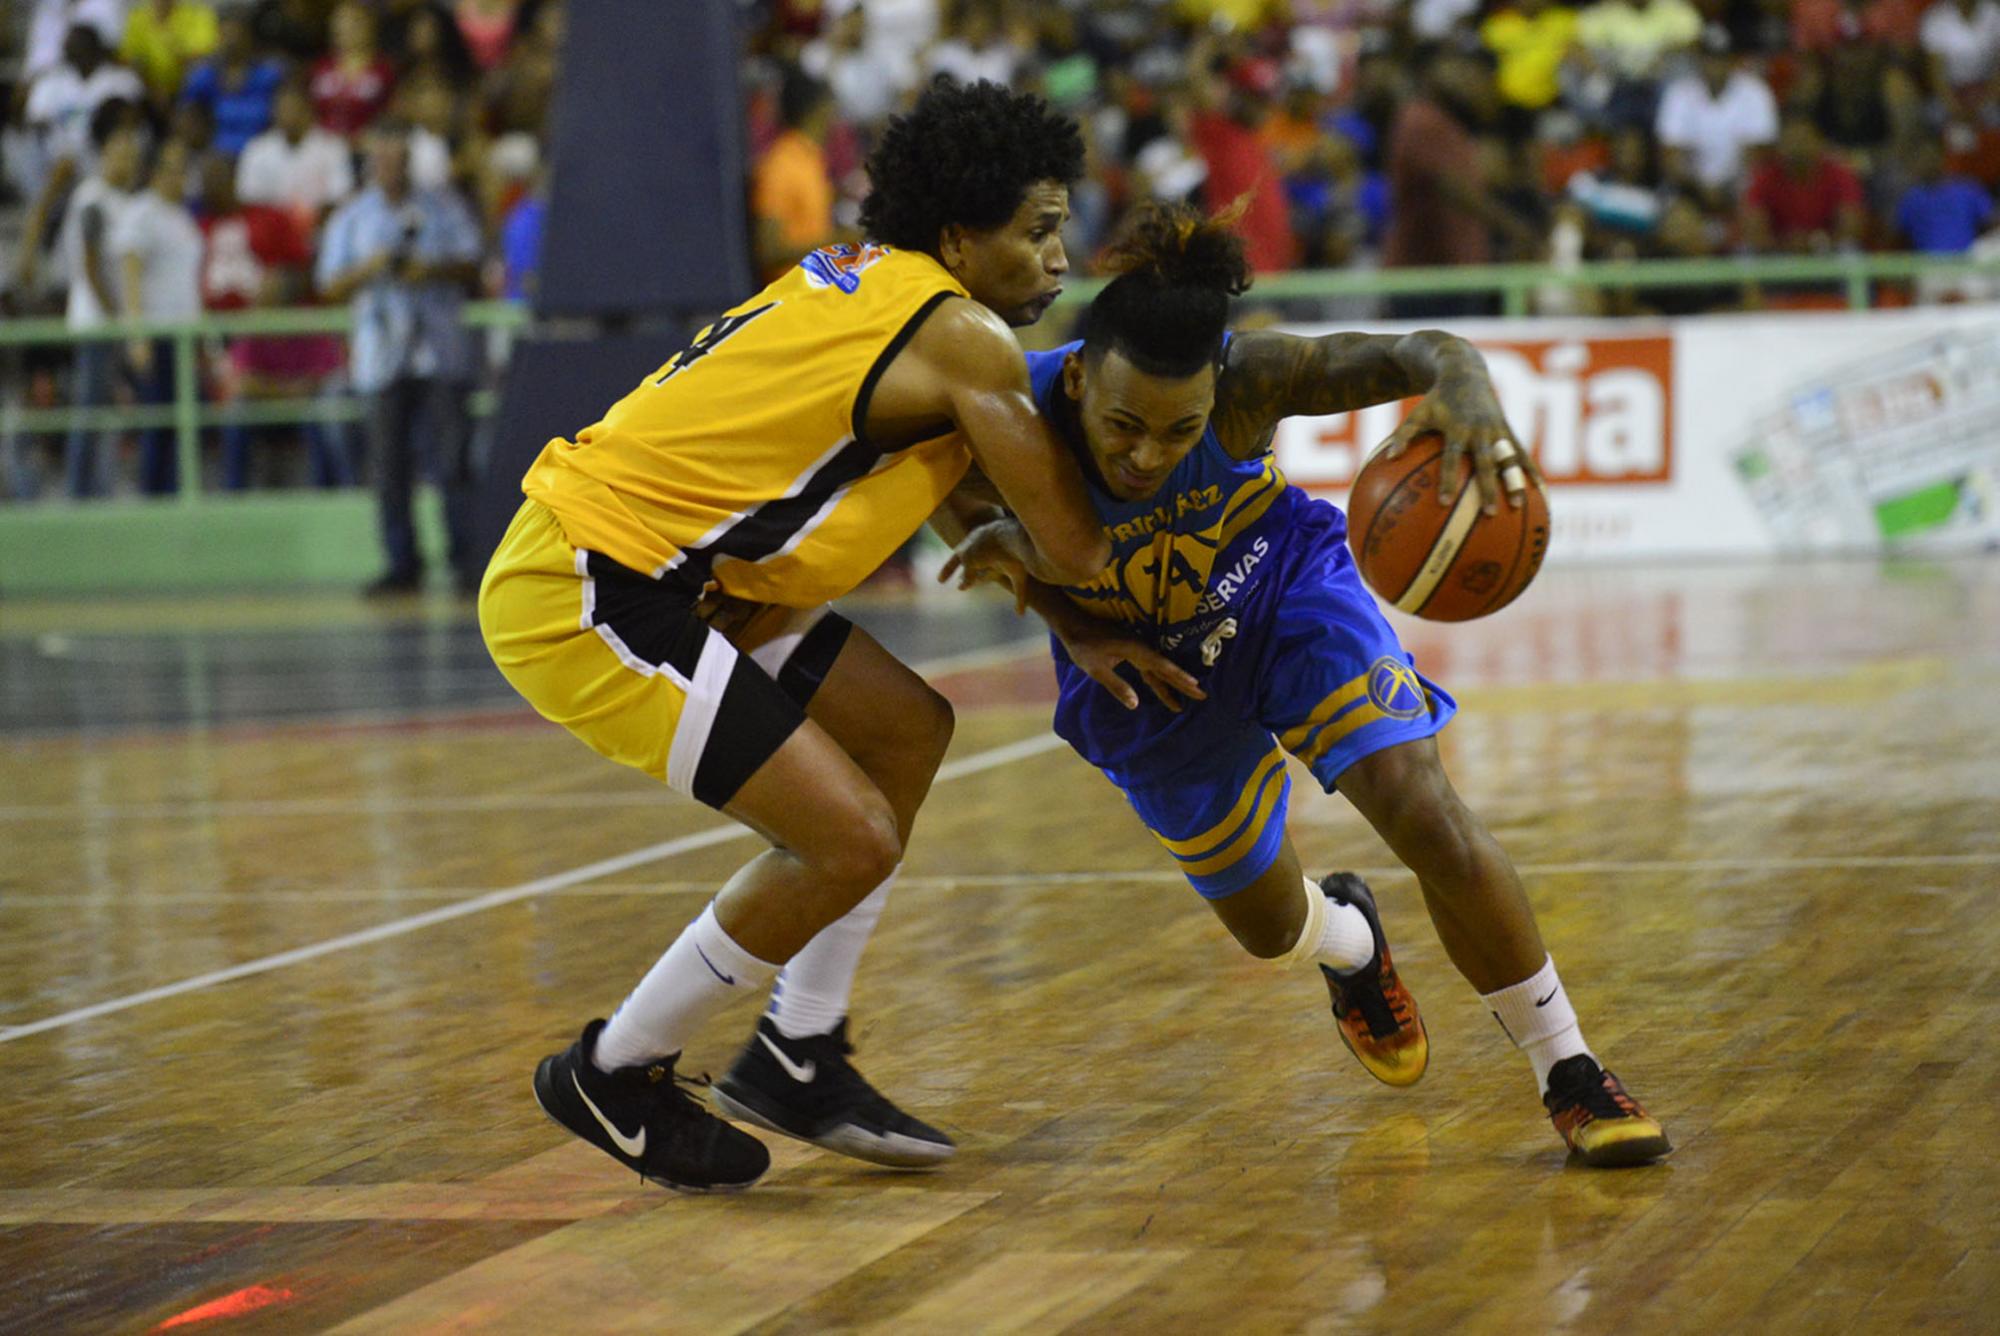 El duelo entre los pequeños dejó ver que el baloncesto no es para grandes, sino para buenos. Danielito Núñez, del Mauricio (con el balón) y José Fortuna, del Barias, pueden hablar de eso.